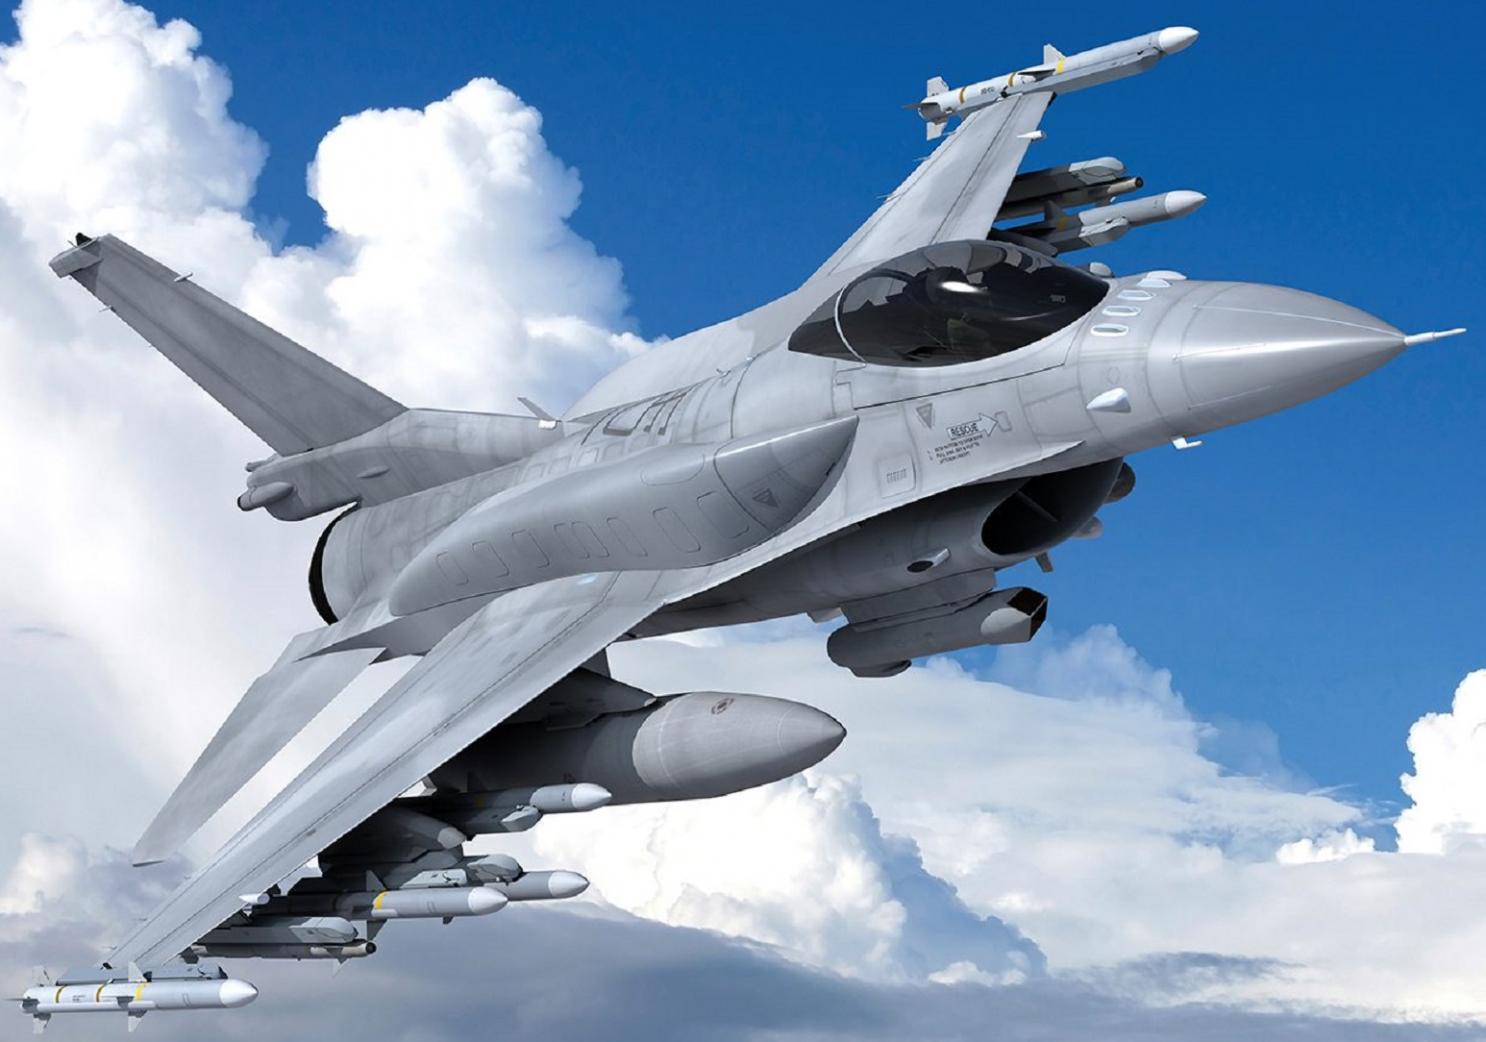 Съединените щати се съгласиха да прехвърлят изтребители F 16 от